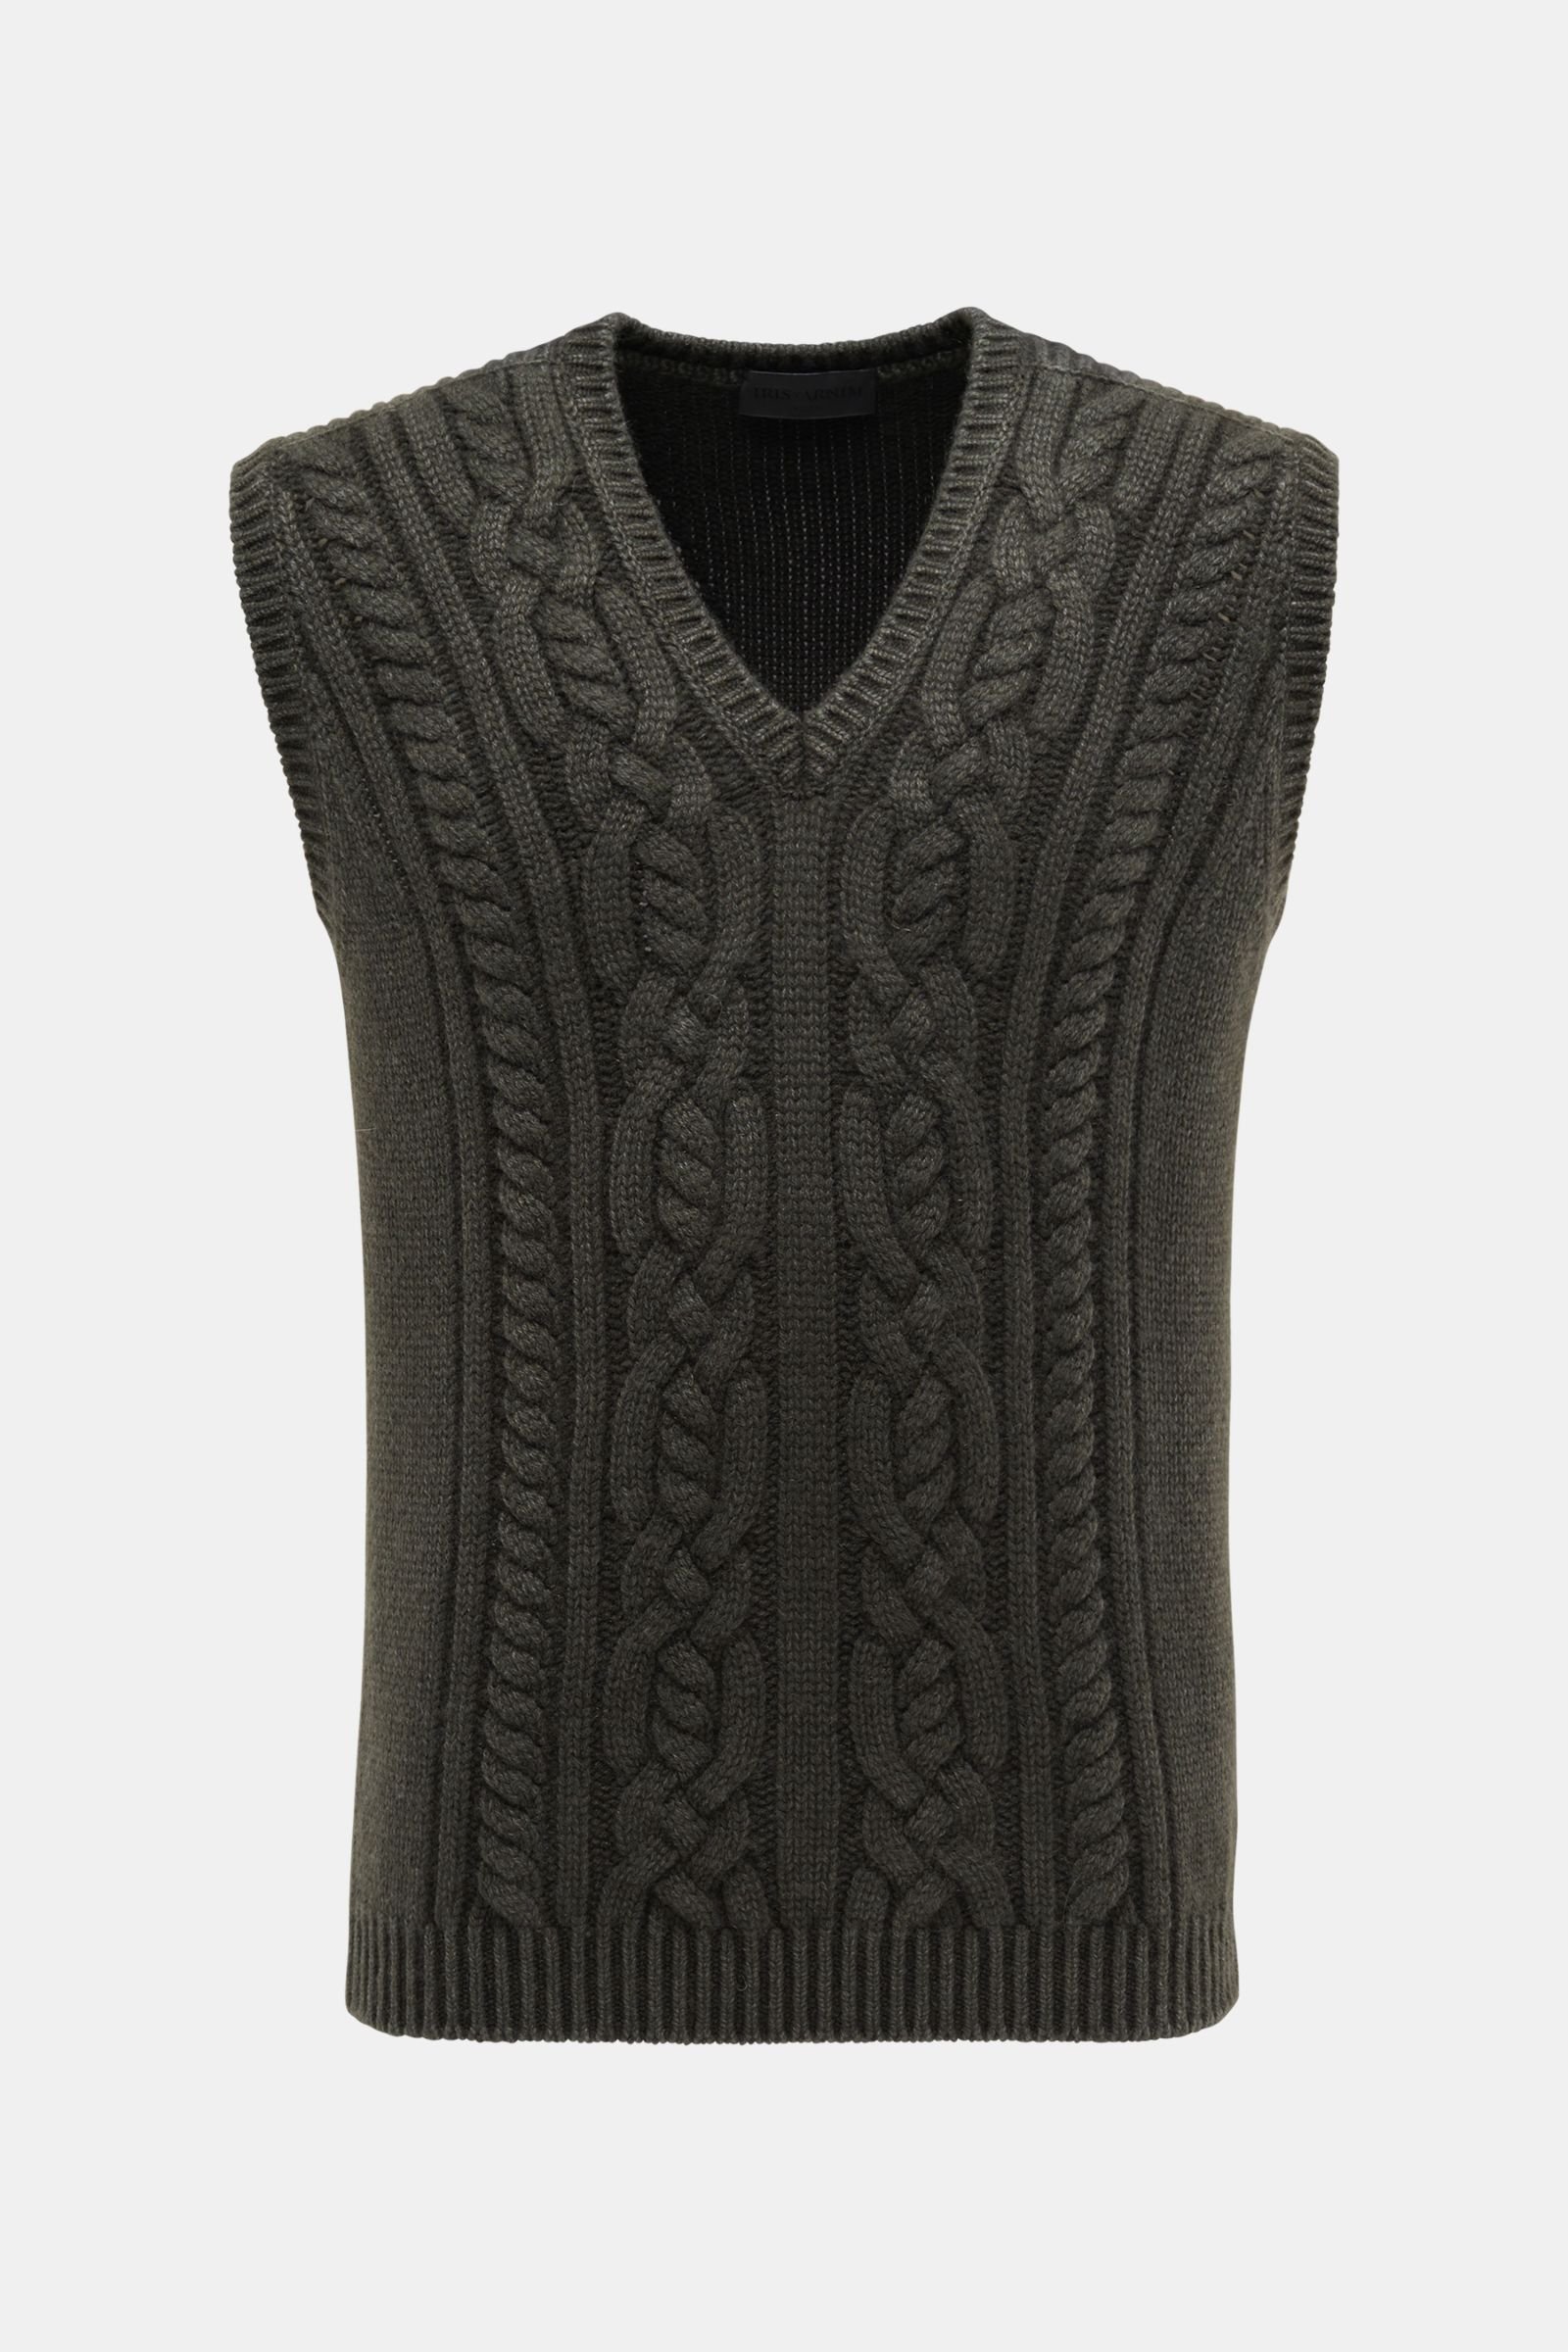 Cashmere sweater vest 'Odell' dark green